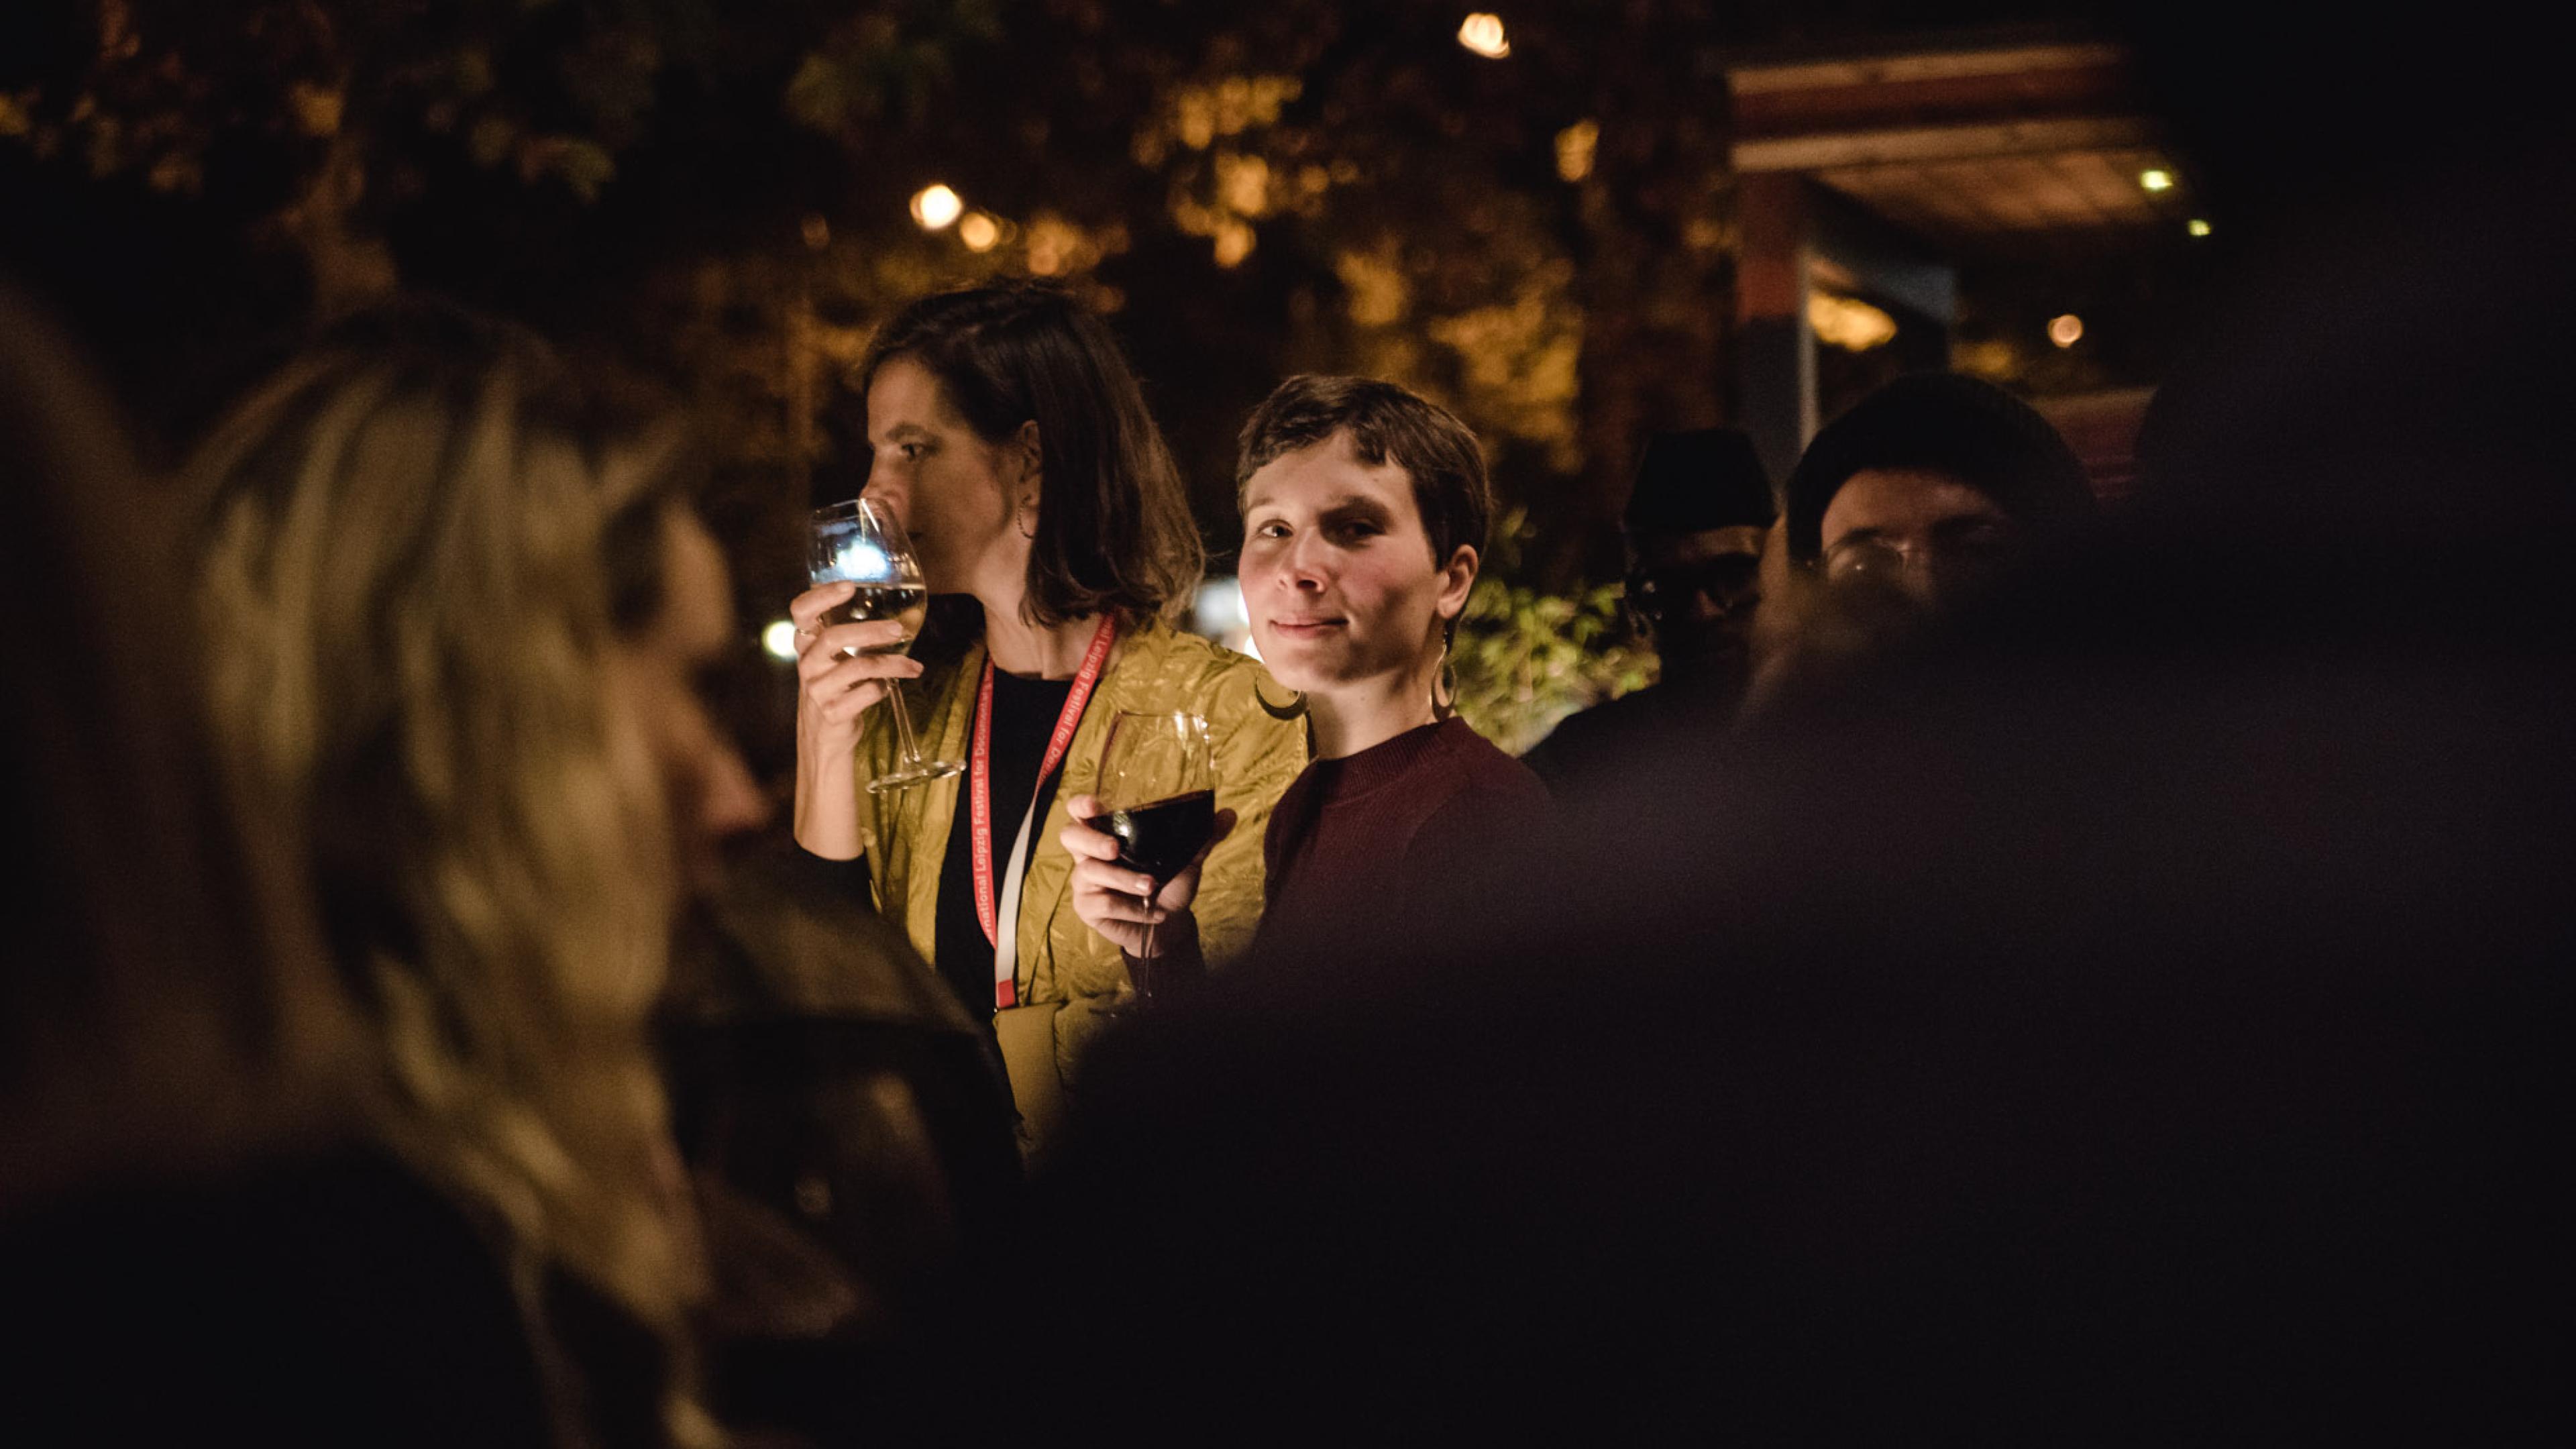 Bei einer Abendveranstaltung steht eine Frau mit kurzen Haaren und einem Glas Rotwein in der Hand umringt von weiteren Personen. Sie blickt seitlich über ihre Schulter direkt in die Kamera und lächelt.